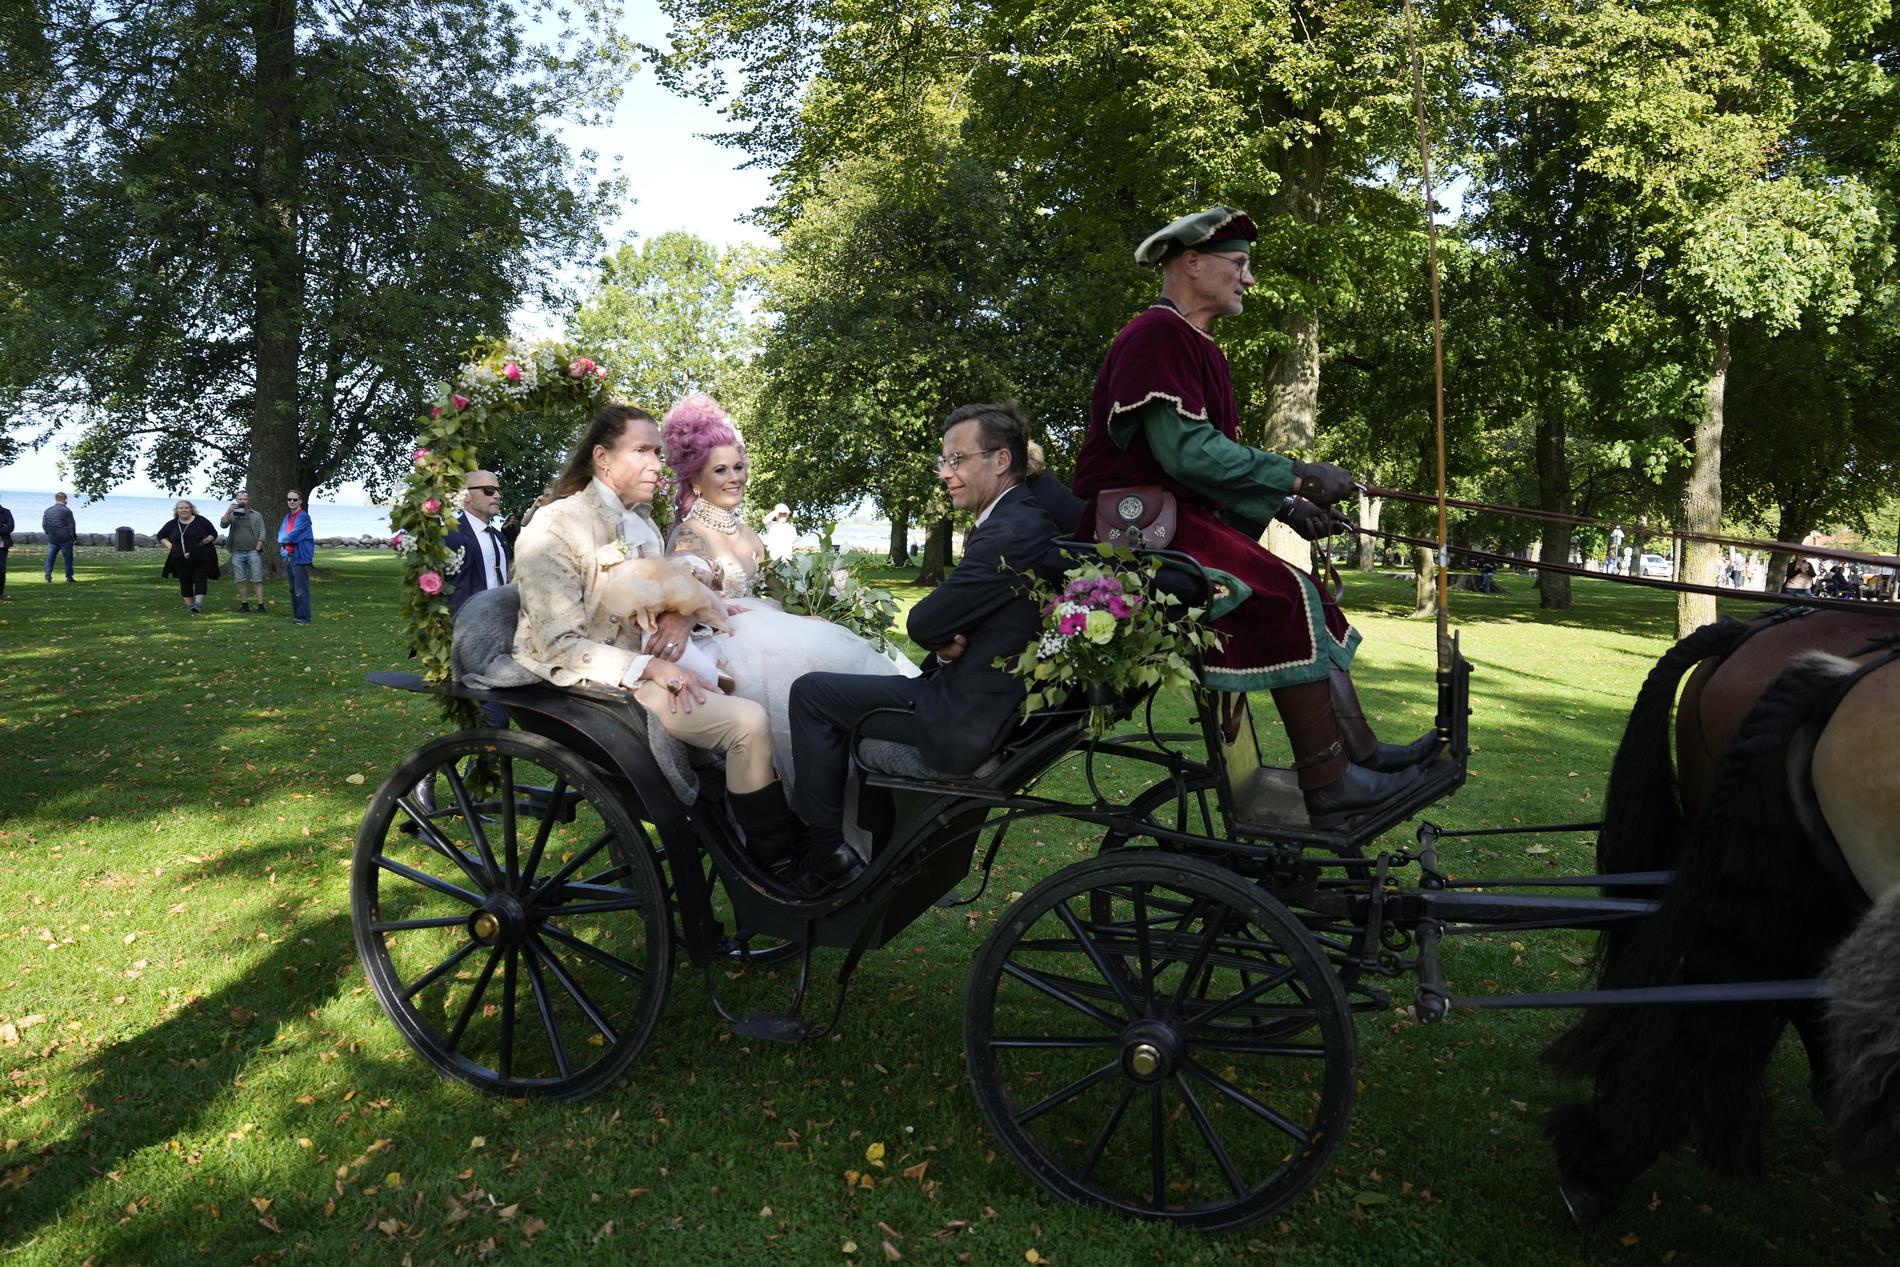 Efter vigseln åkte brudparet häst och vagn med statsministern och hans fru Birgitta Ed, som även vigde paret.